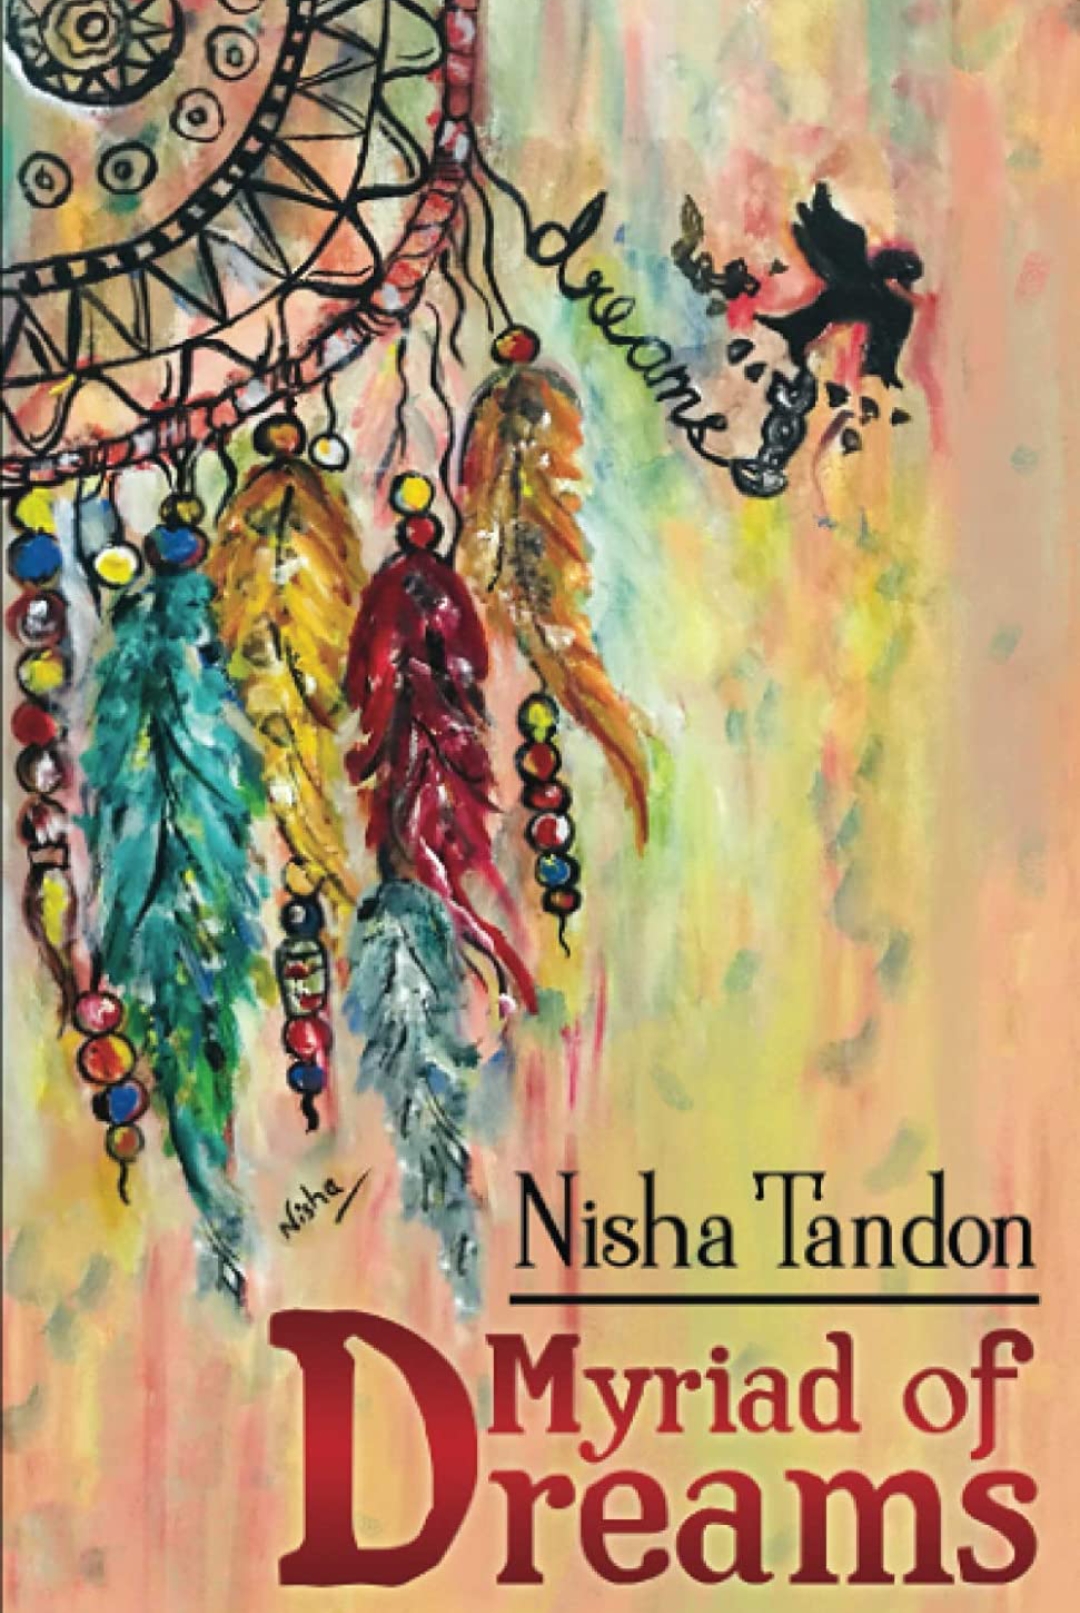 Myriad of Dreams by Nisha Tandon